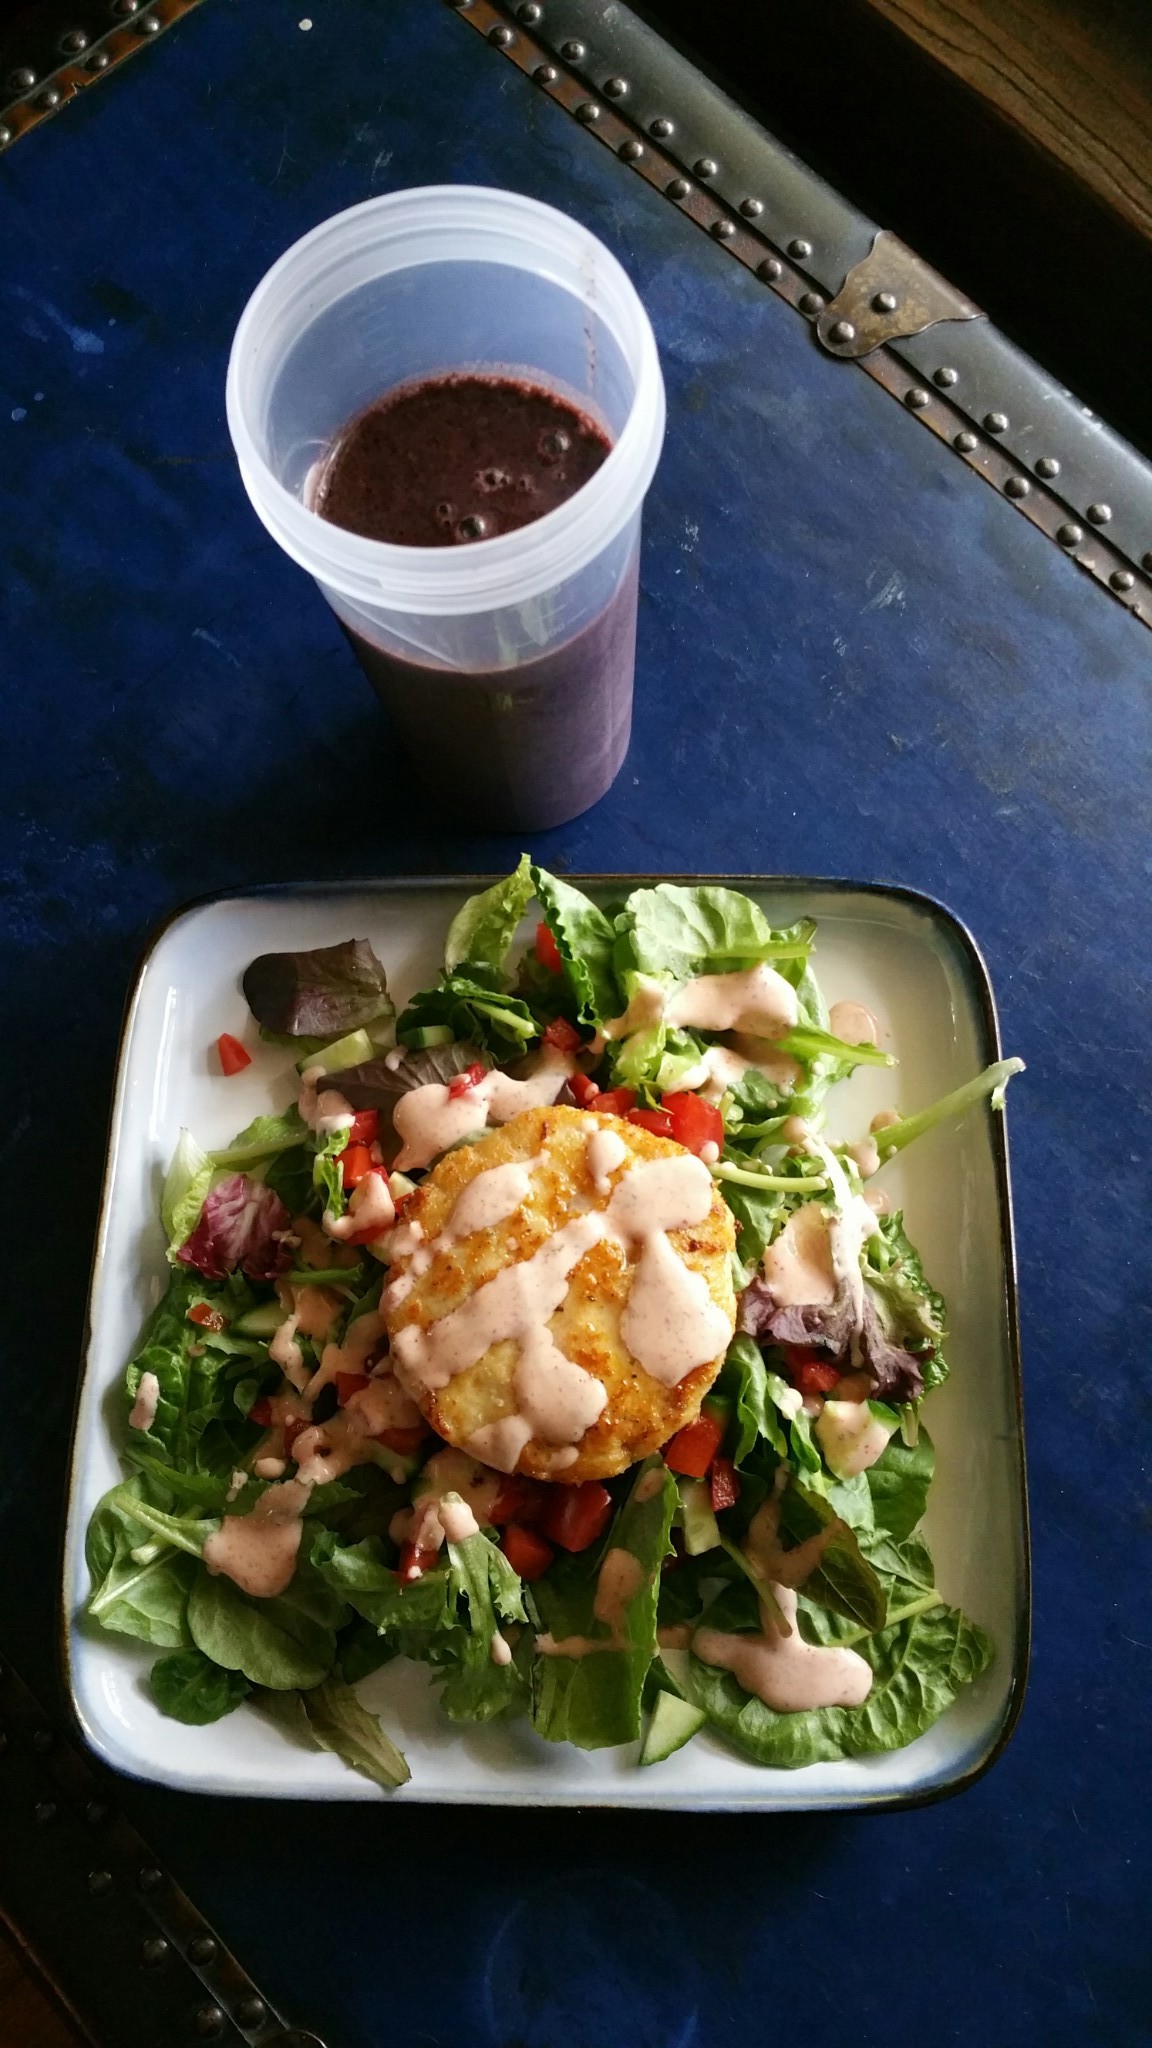 Salad with a mahi mahi burger and smoothie